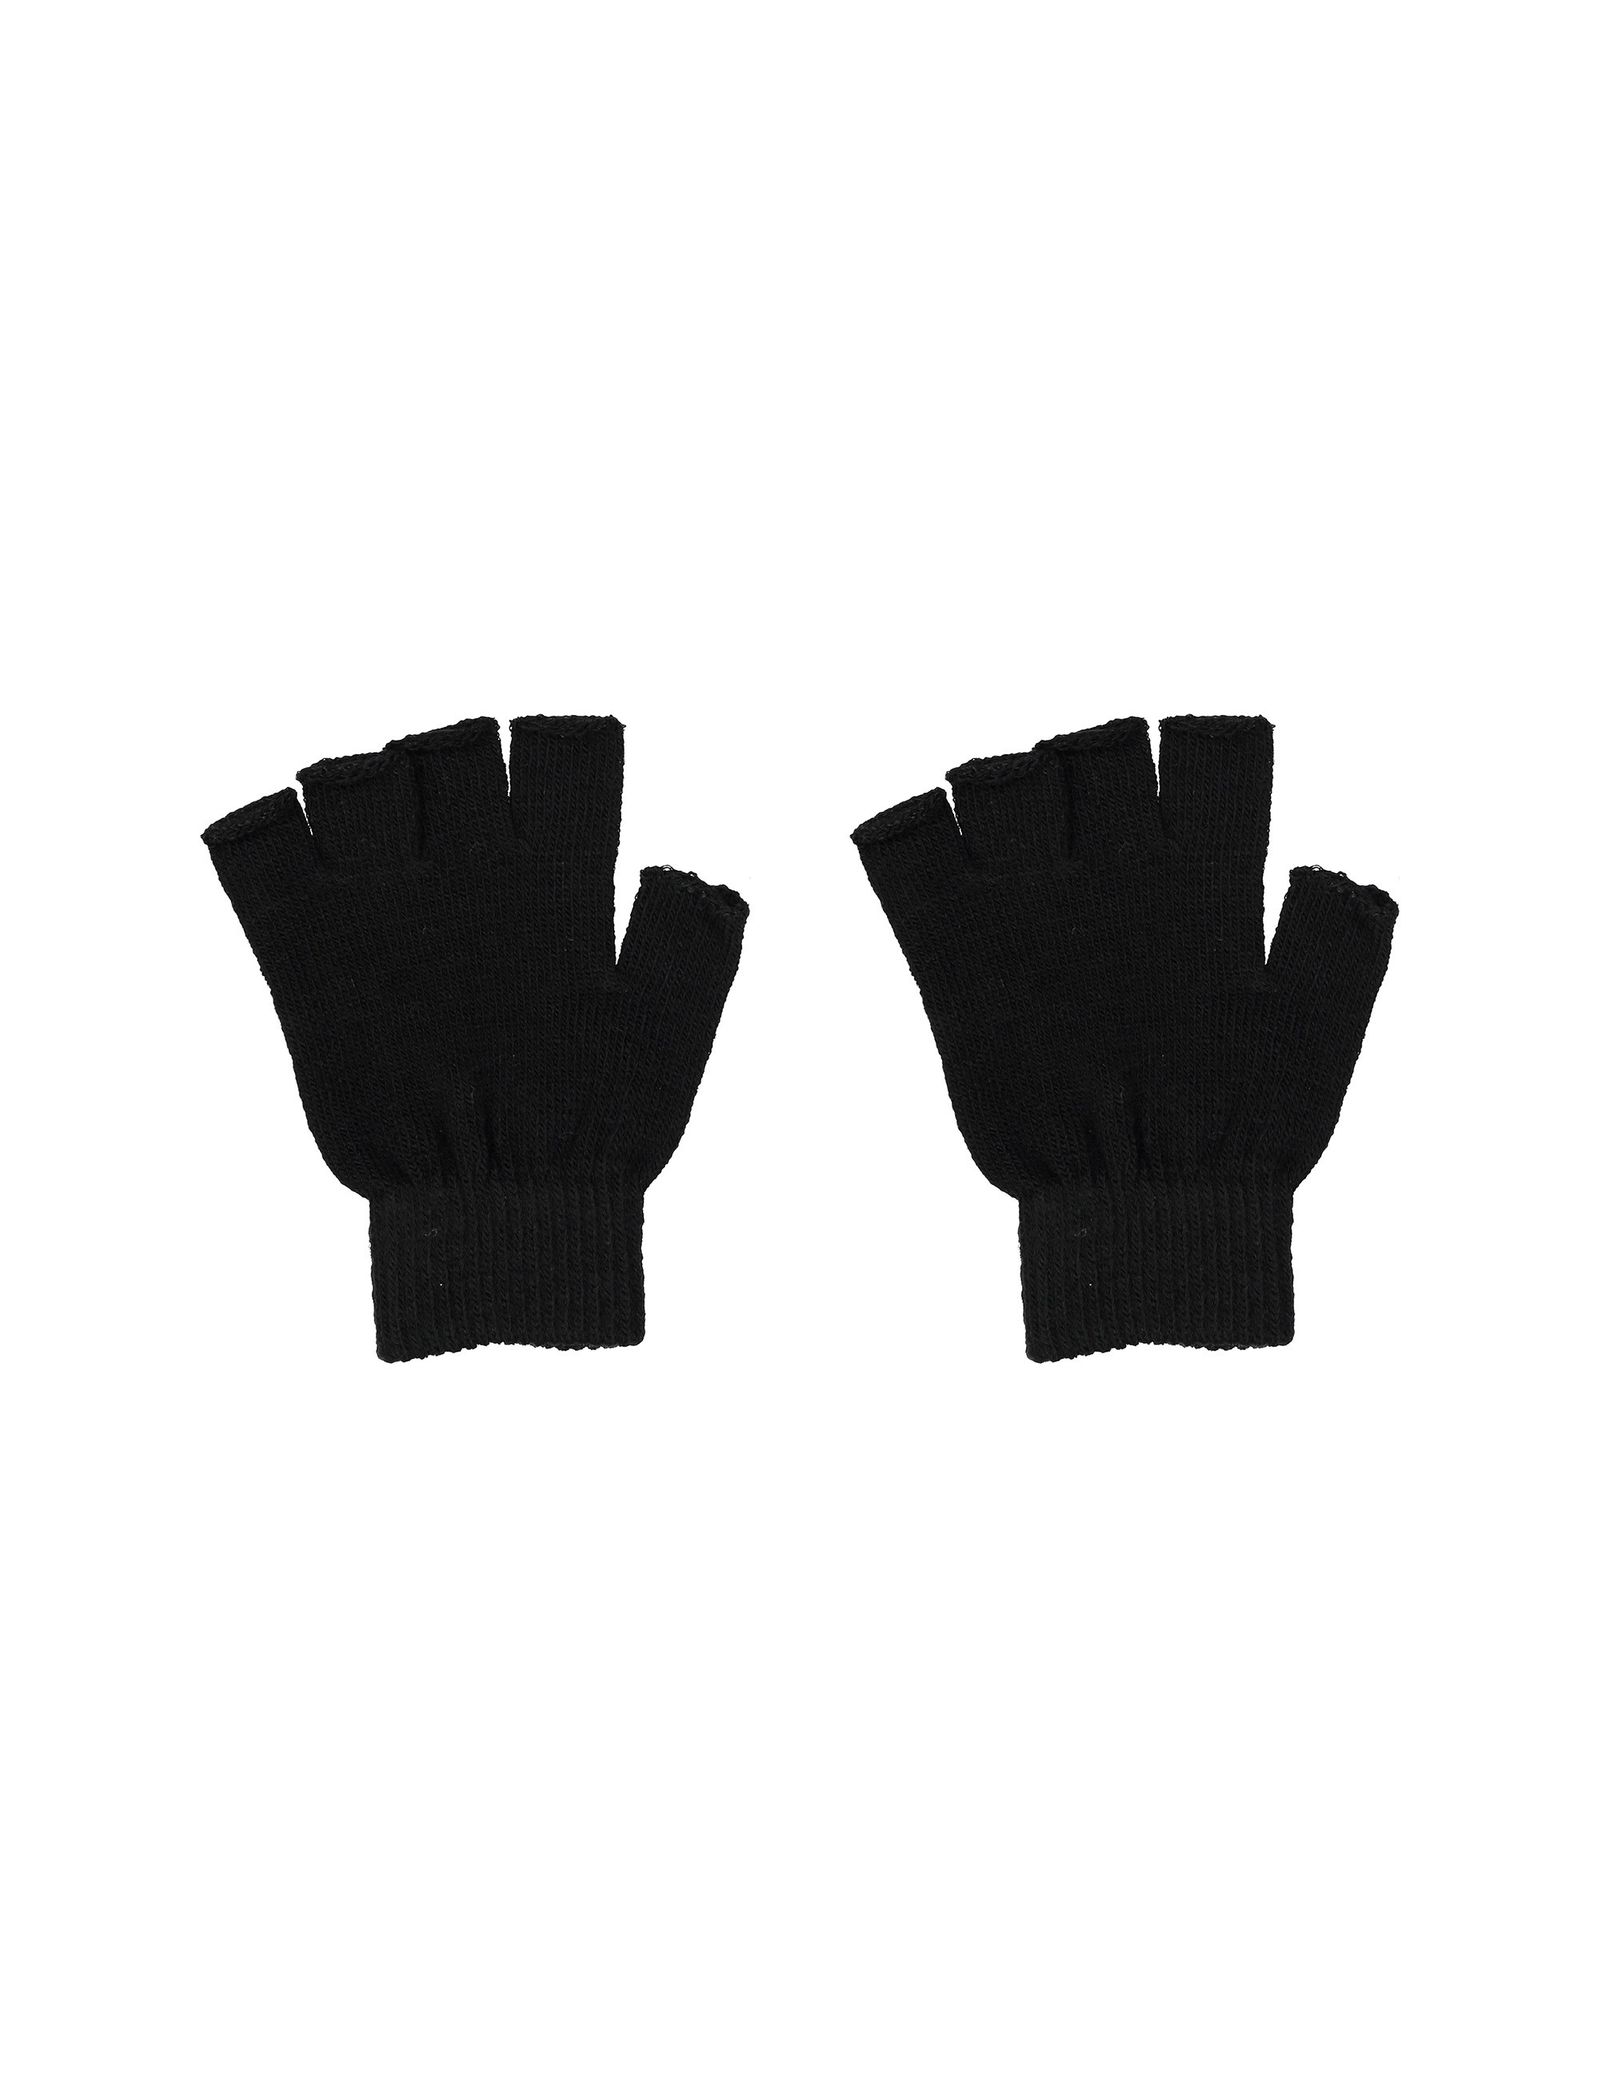 دستکش بدون انگشت زنانه بسته 2 عددی - جنیفر - سفيد و مشکي - 8